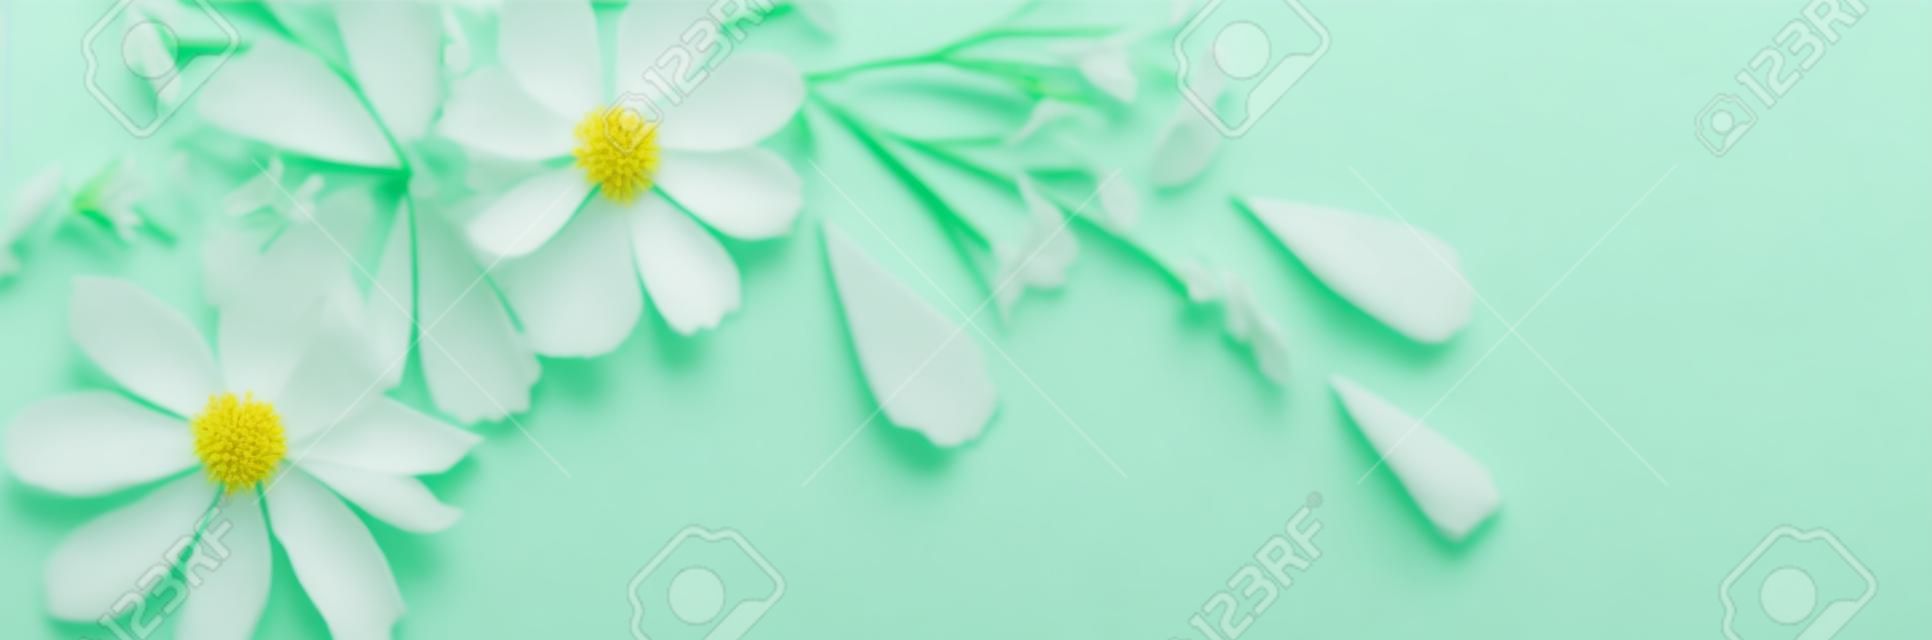 緑の紙の背景に白い花